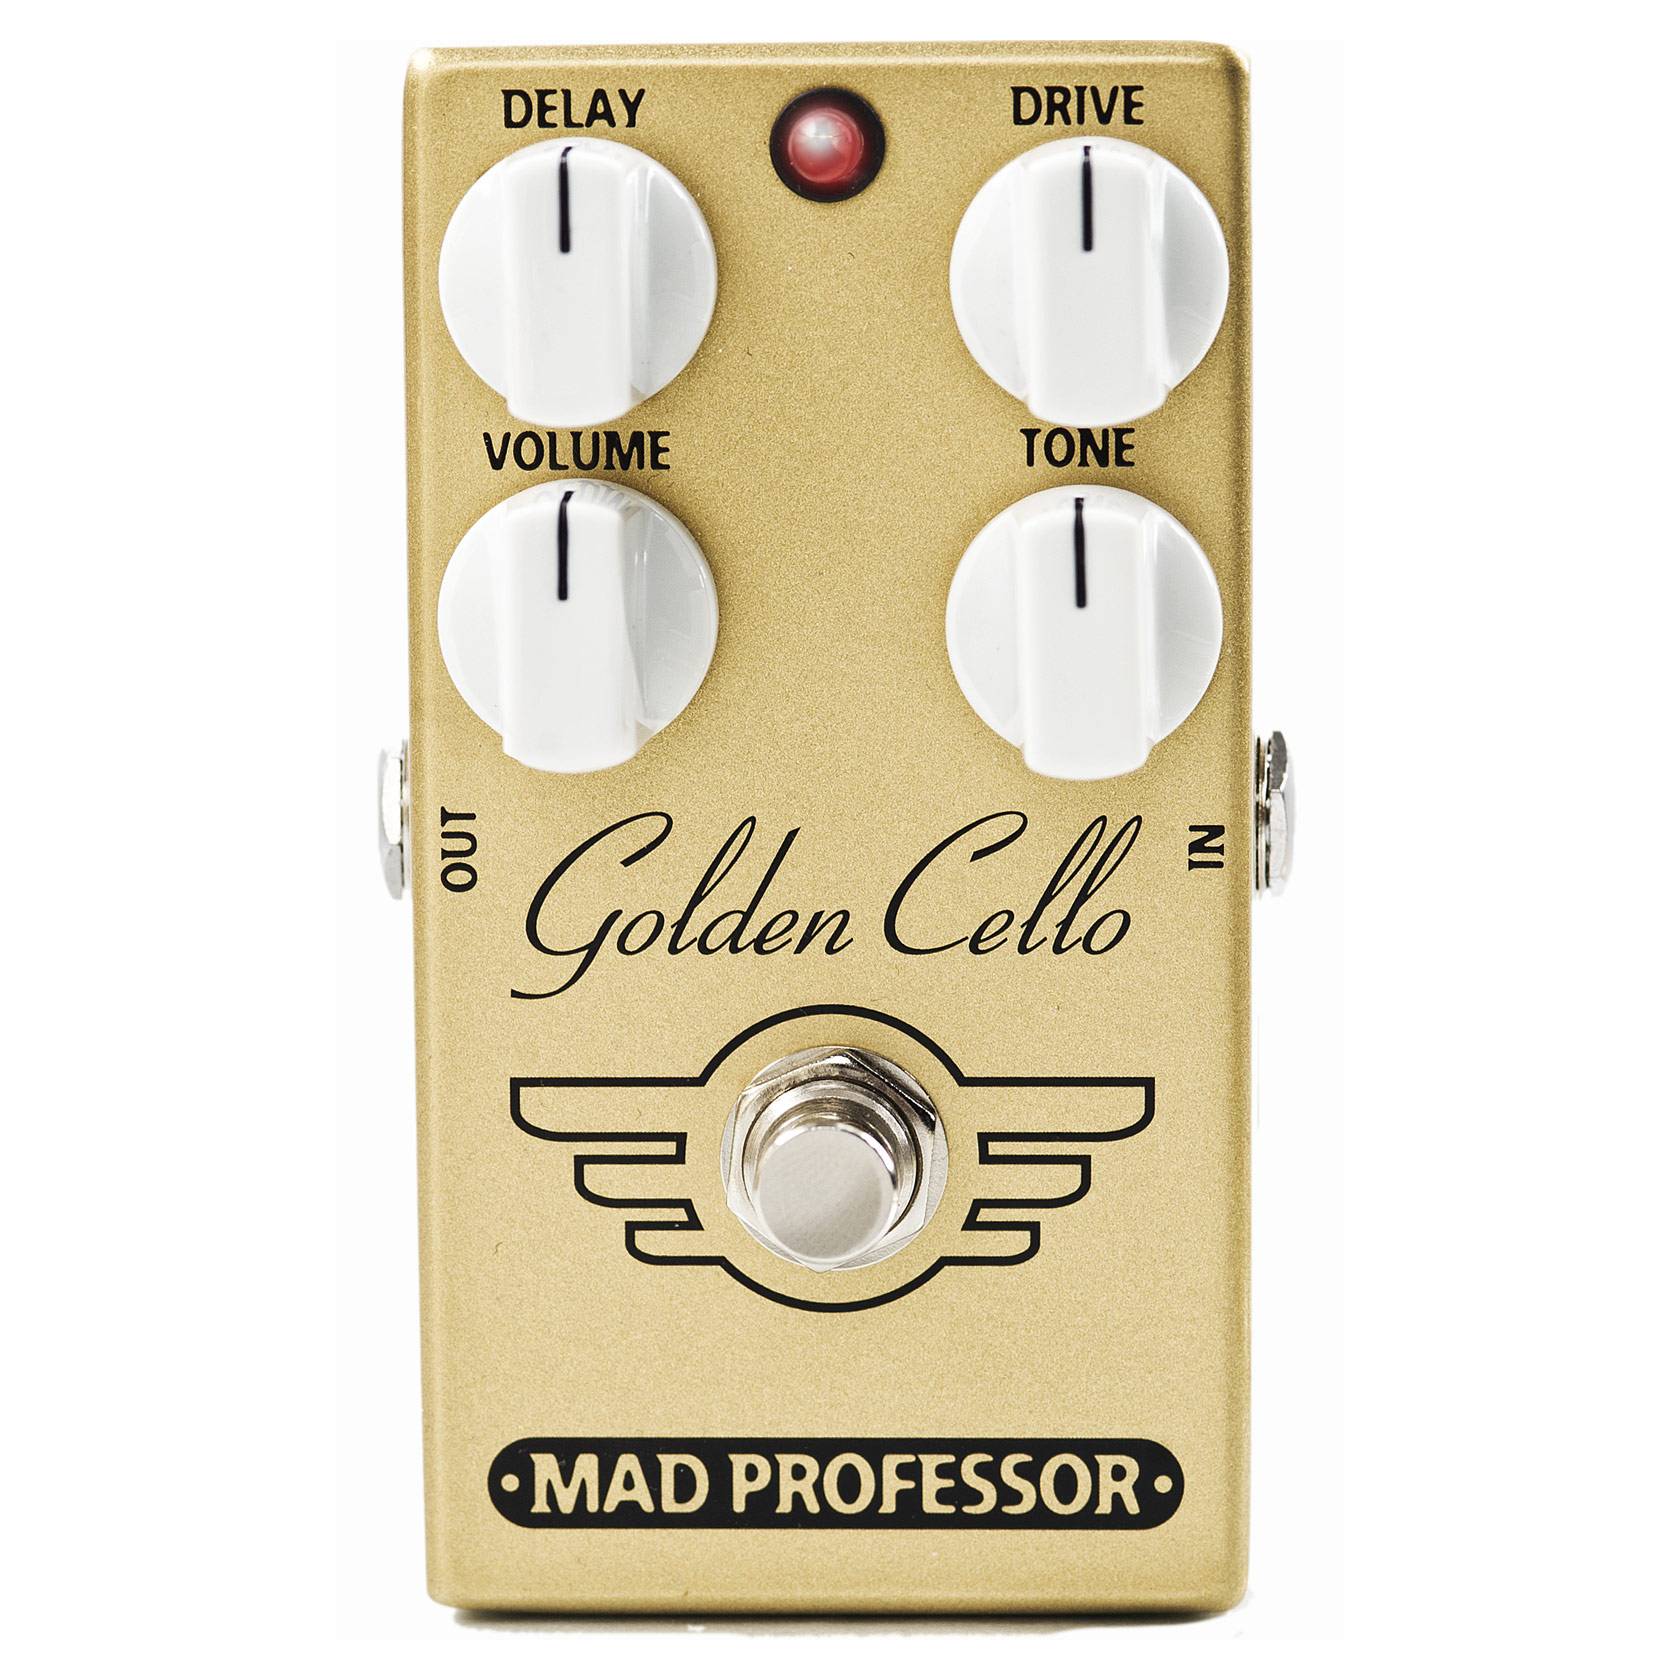 Golden Cello FAC / MAD  PROFESSOR